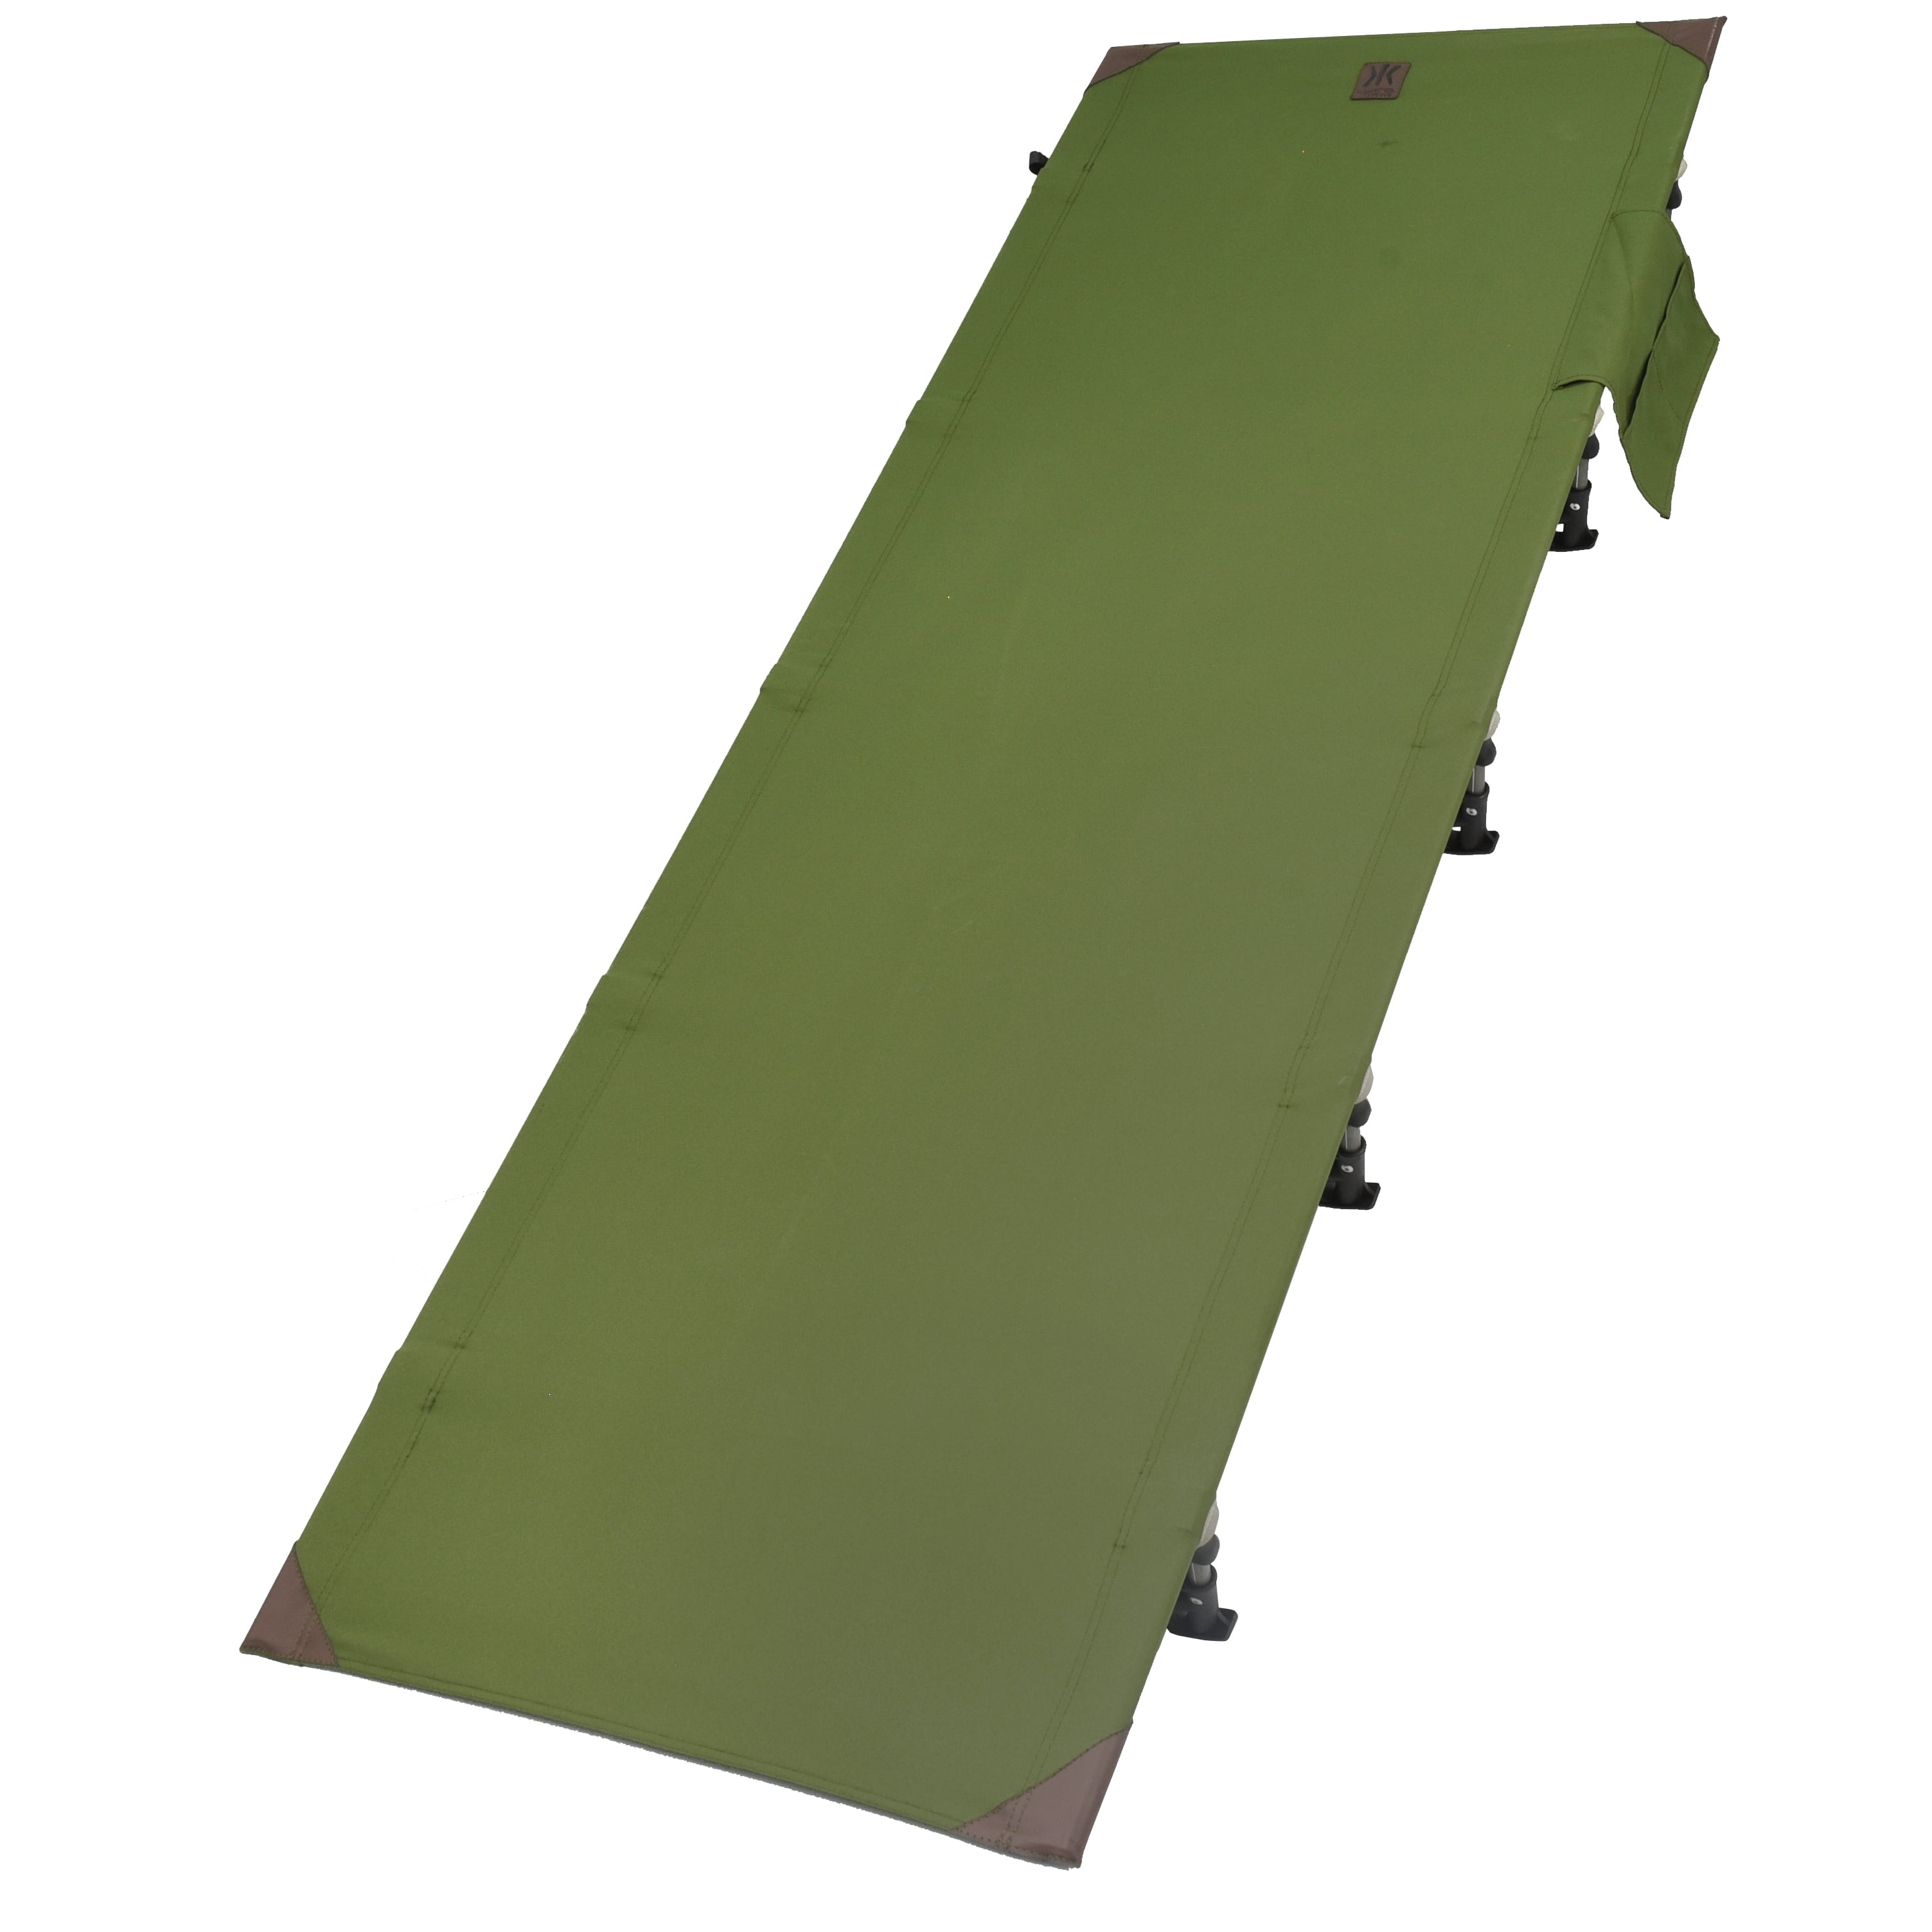 Kijaro Lightweight Cot, Assembled Size: 75.6" L x 6” H x 27.6” W